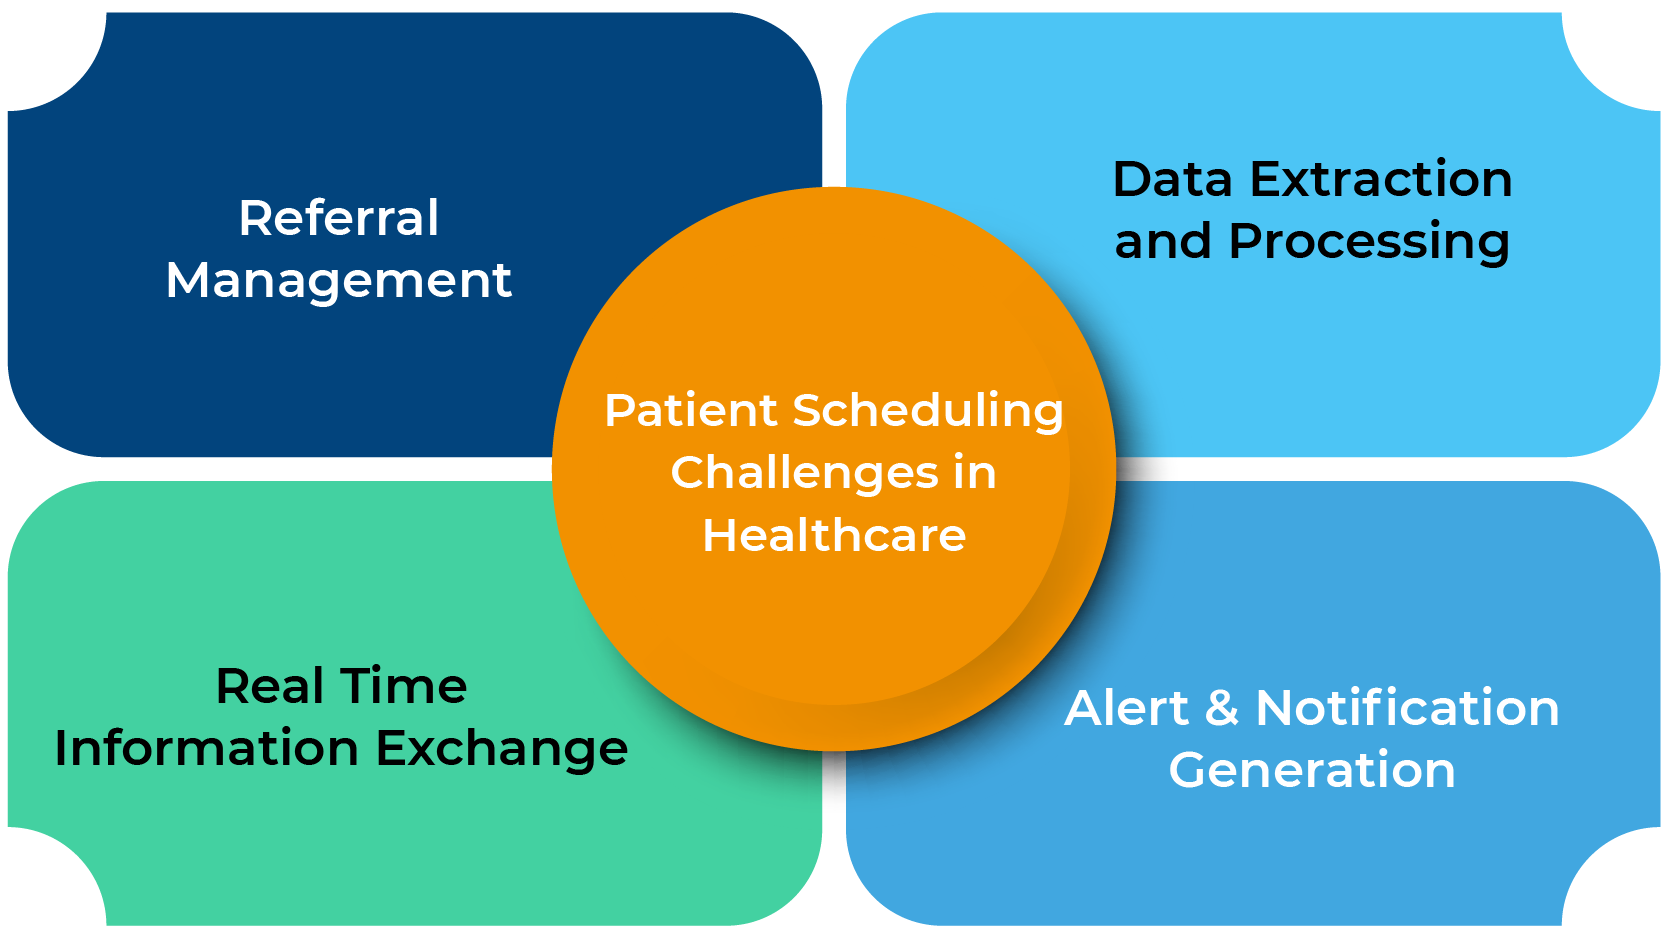 Patient Scheduling Challenges in Healthcare